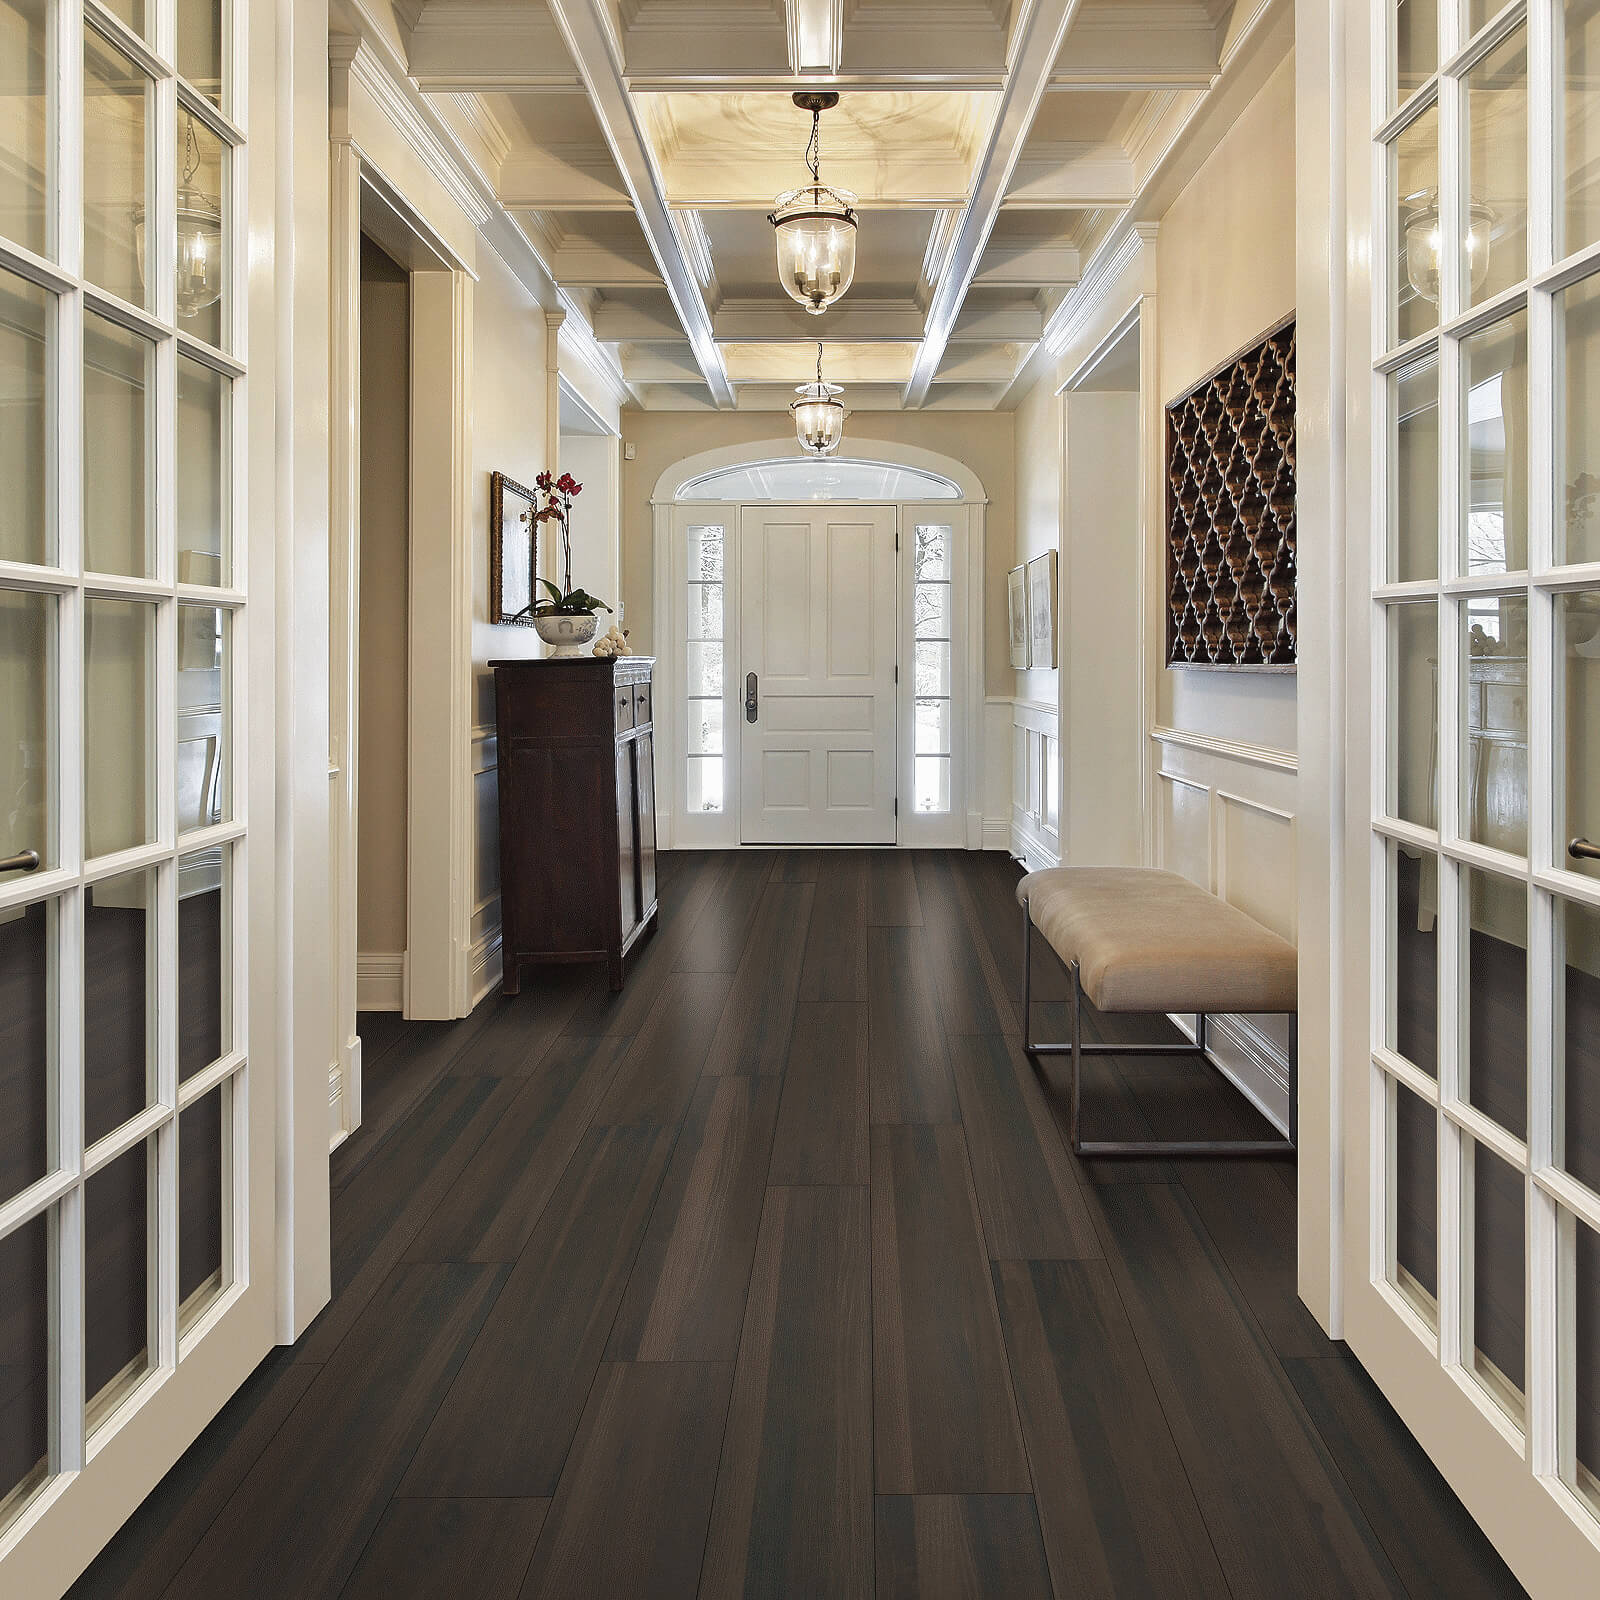 Waterproof flooring in hallway | Sterling Carpet and Flooring